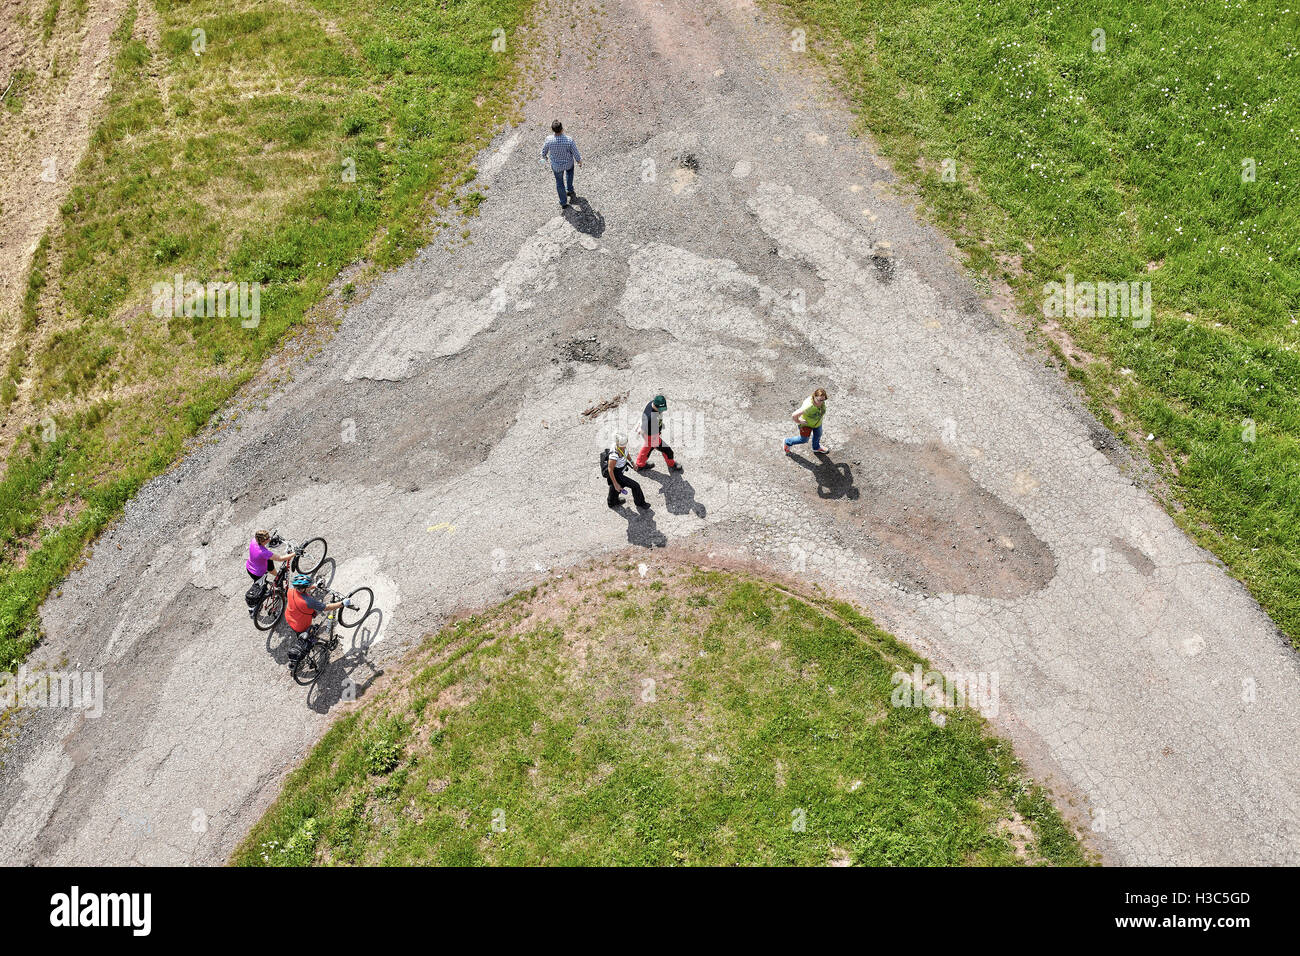 Babi, République tchèque - 28 mai 2016 : Photo aérienne d'une route de terre carrefour avec des gens qui marchent dans des directions différentes. Banque D'Images